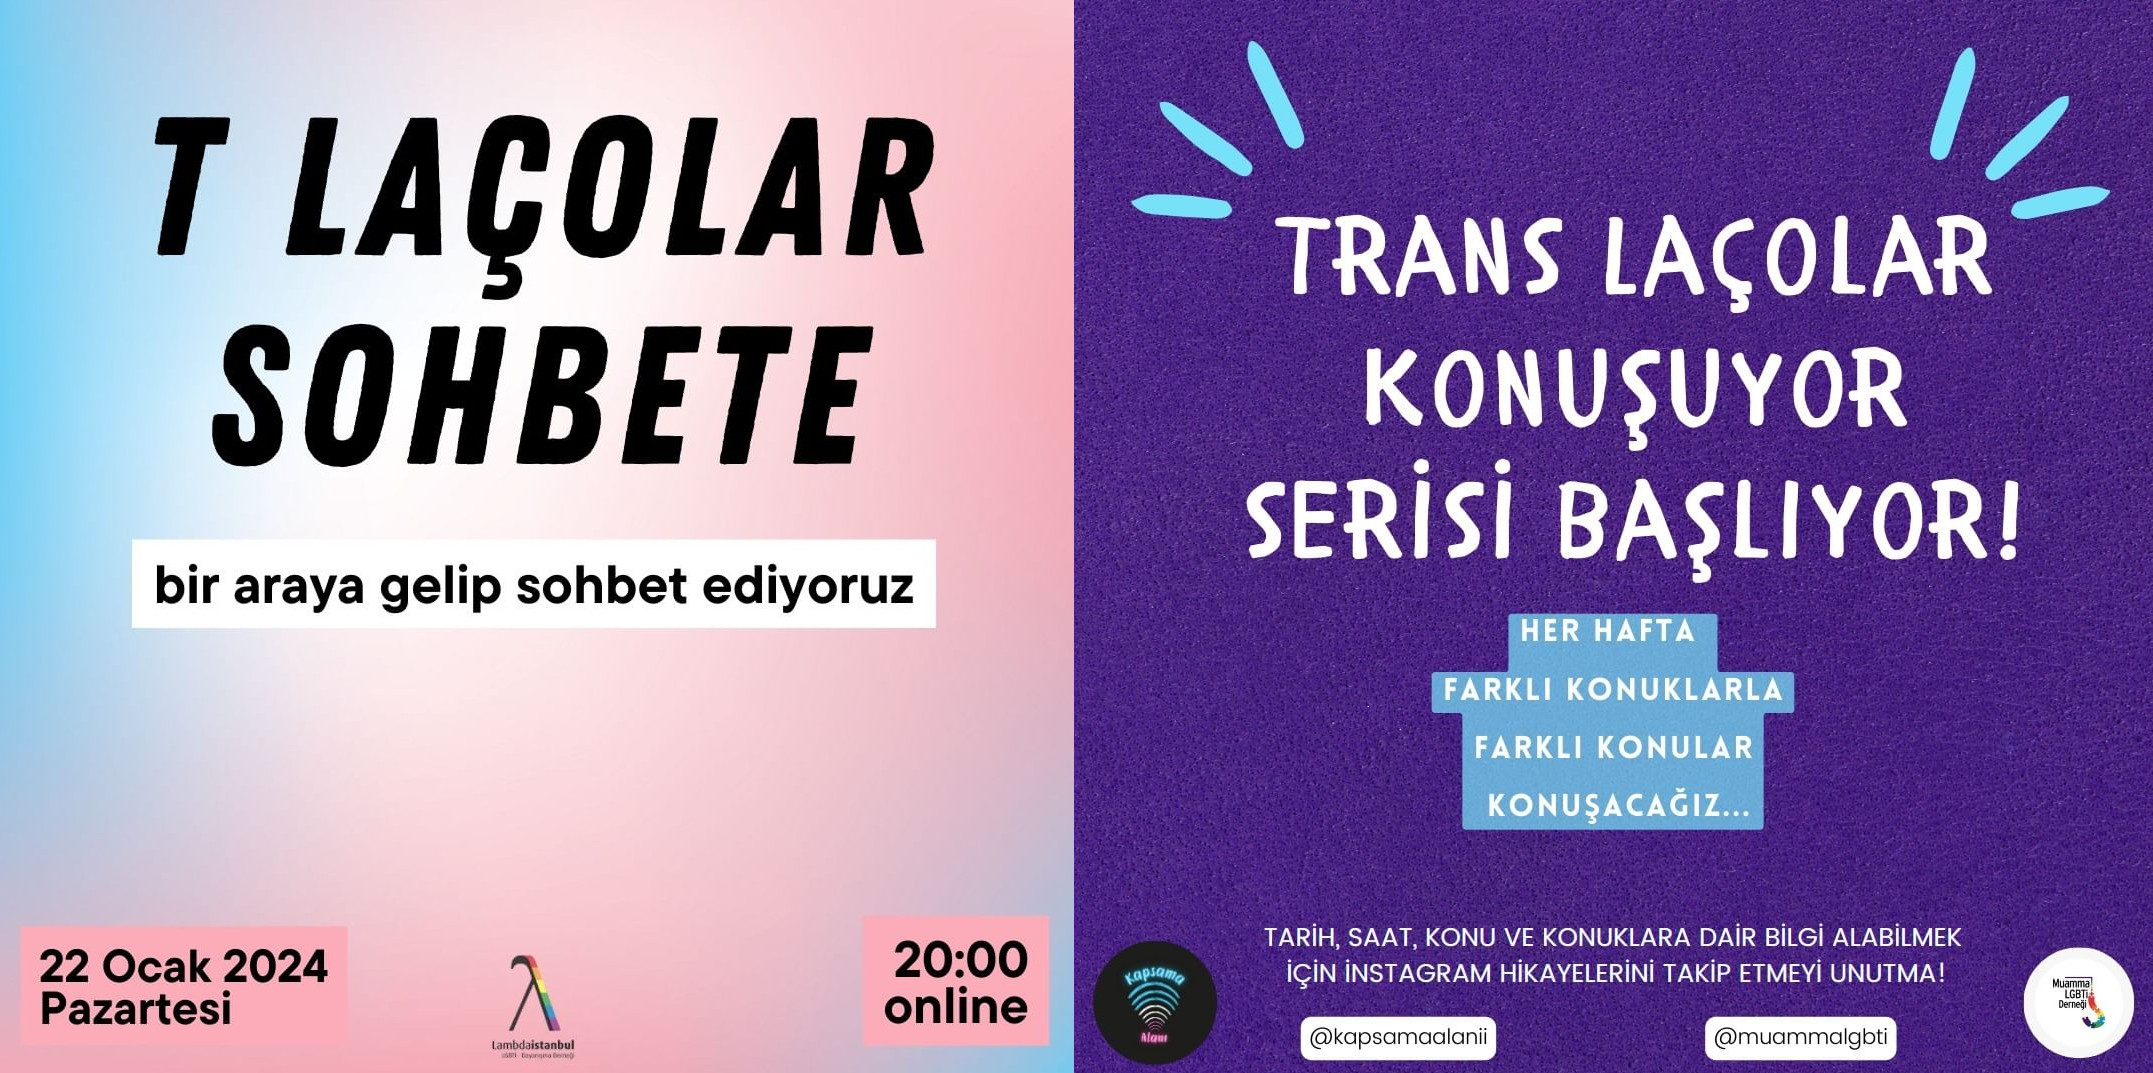 Trans laçolar için sohbet etkinlikleri | Kaos GL - LGBTİ+ Haber Portalı Haber